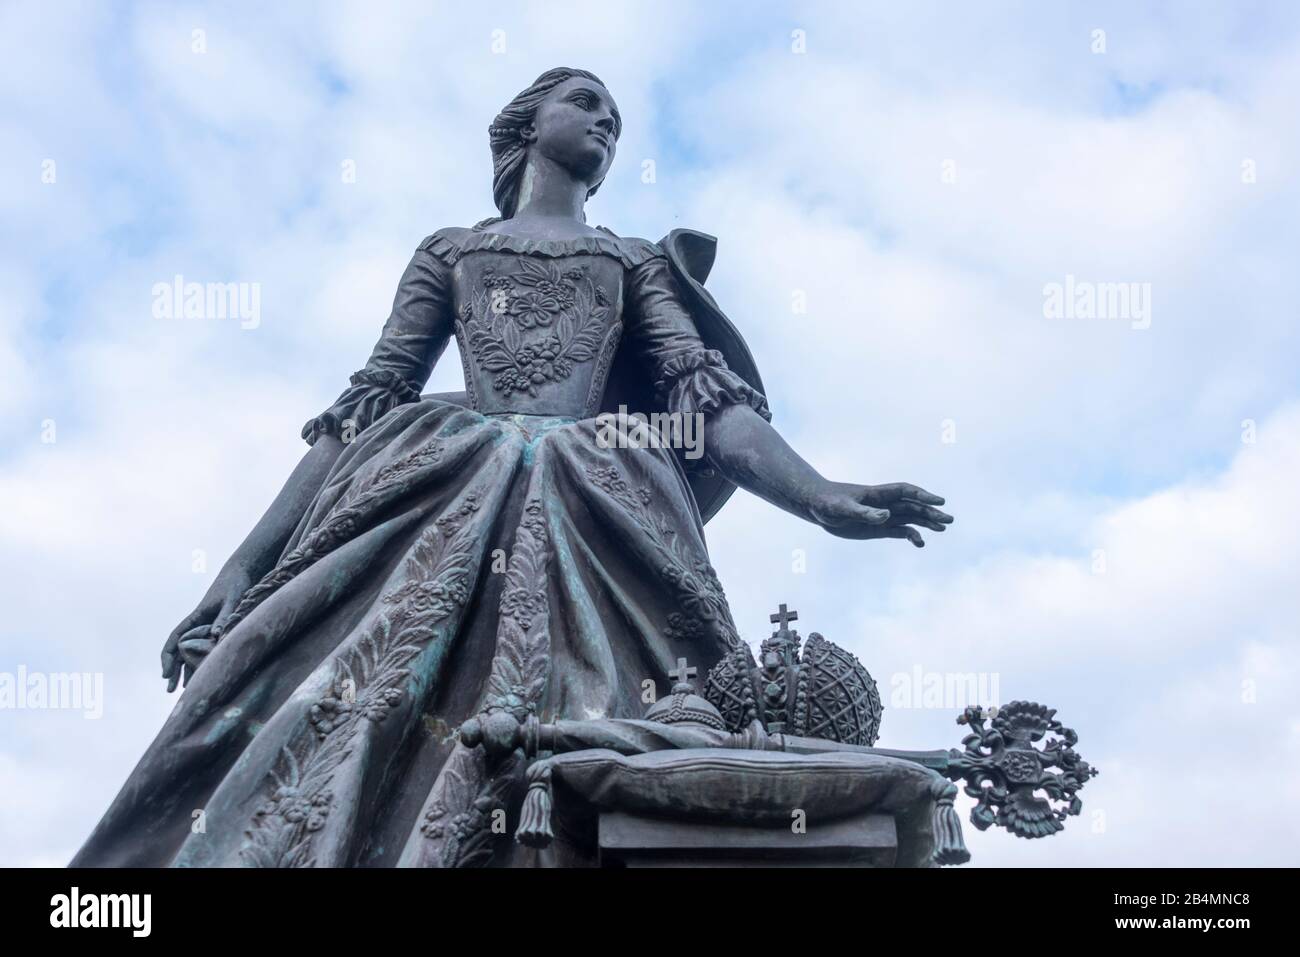 Allemagne, Saxe-Anhalt, Zerbst, vue sur le monument de la princesse Sophie Auguste Friederike von Anhalt-Zerbst. Plus tard, elle est devenue Tsarina Catherine II de Russie et est descende dans l'histoire comme Catherine la Grande. Elle vit au Château de Zerbagster de 1742 au début de 1744. Banque D'Images